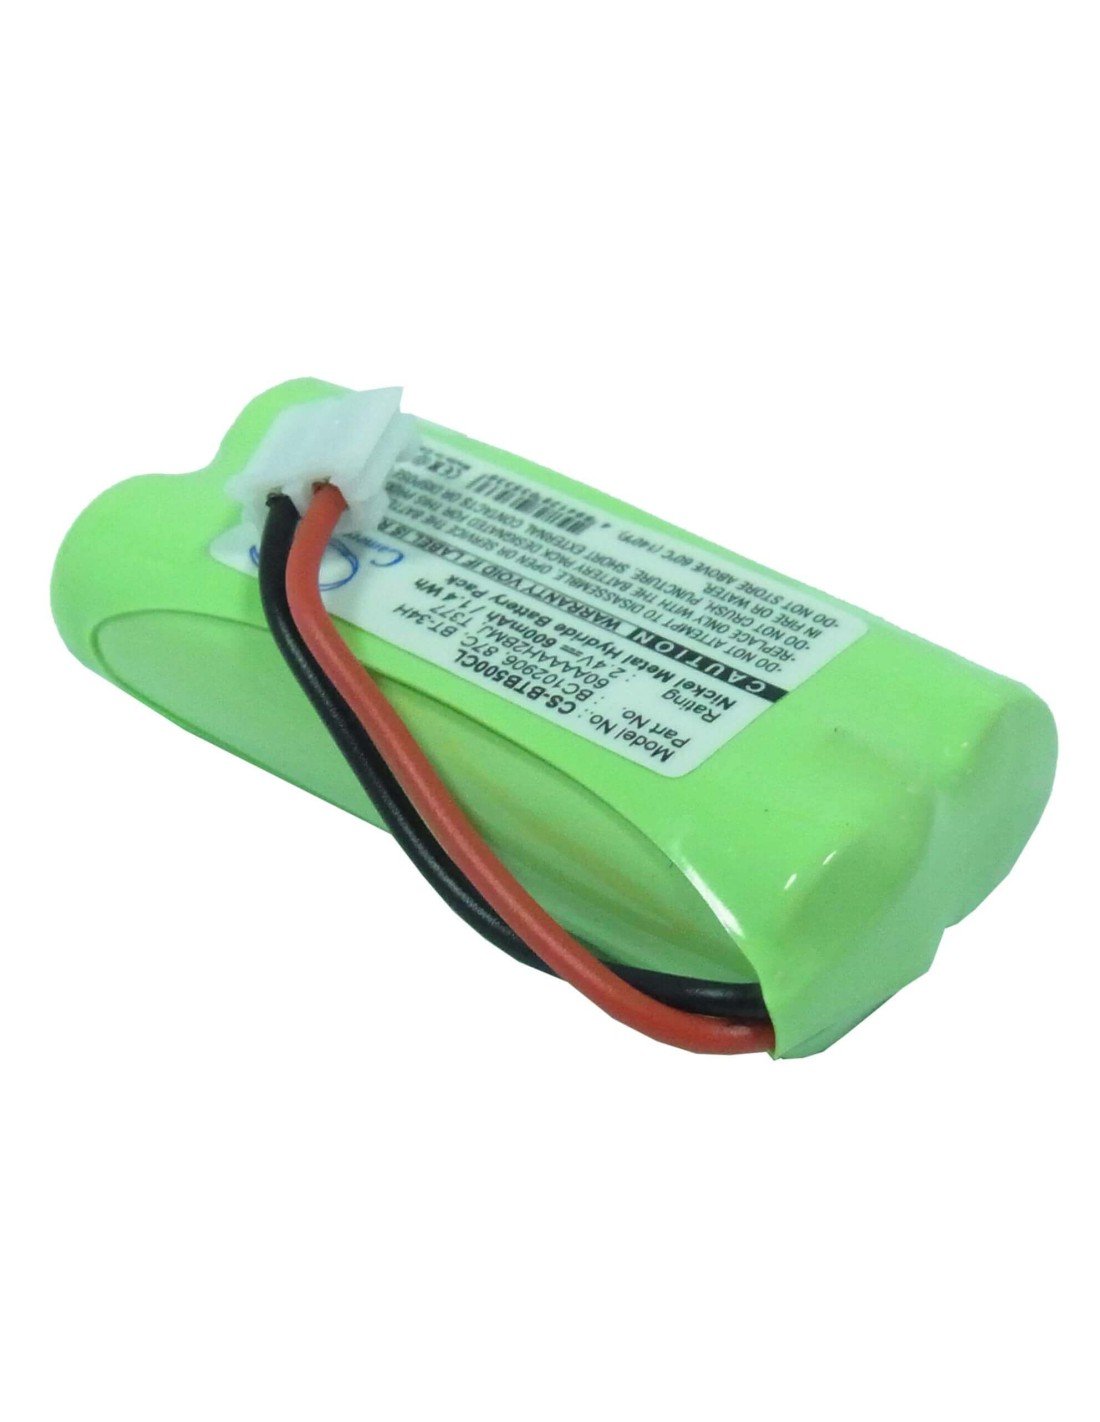 Battery for Lexibook, Dp 380fr, Dp 411, 2.4V, 600mAh - 1.44Wh